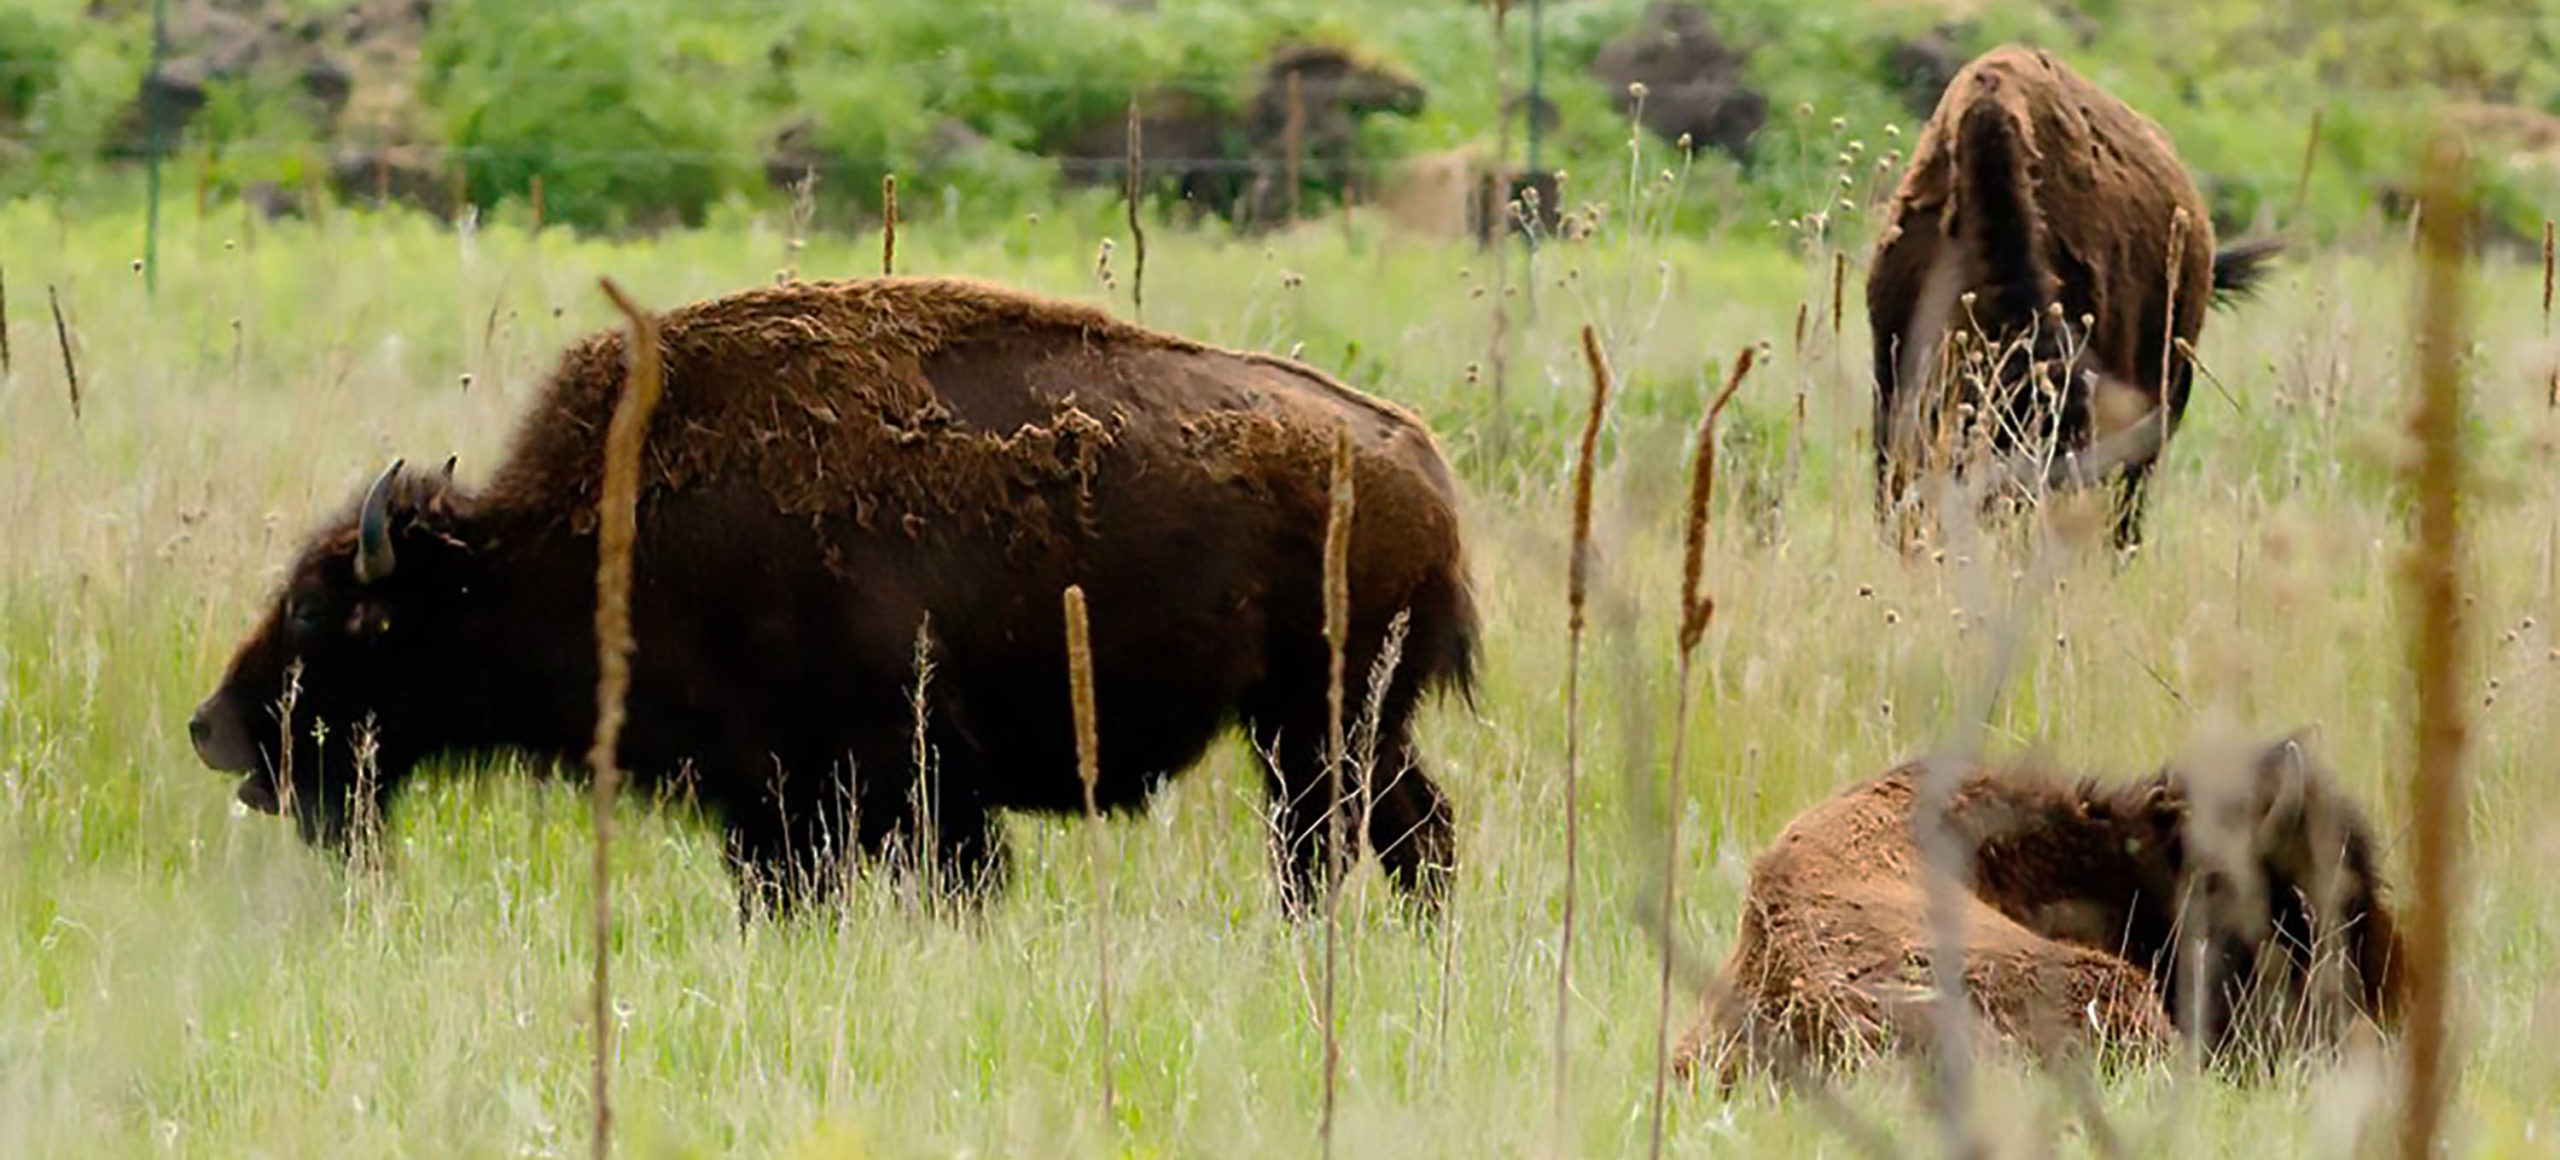 Minnesota Bison Conservation at State Park